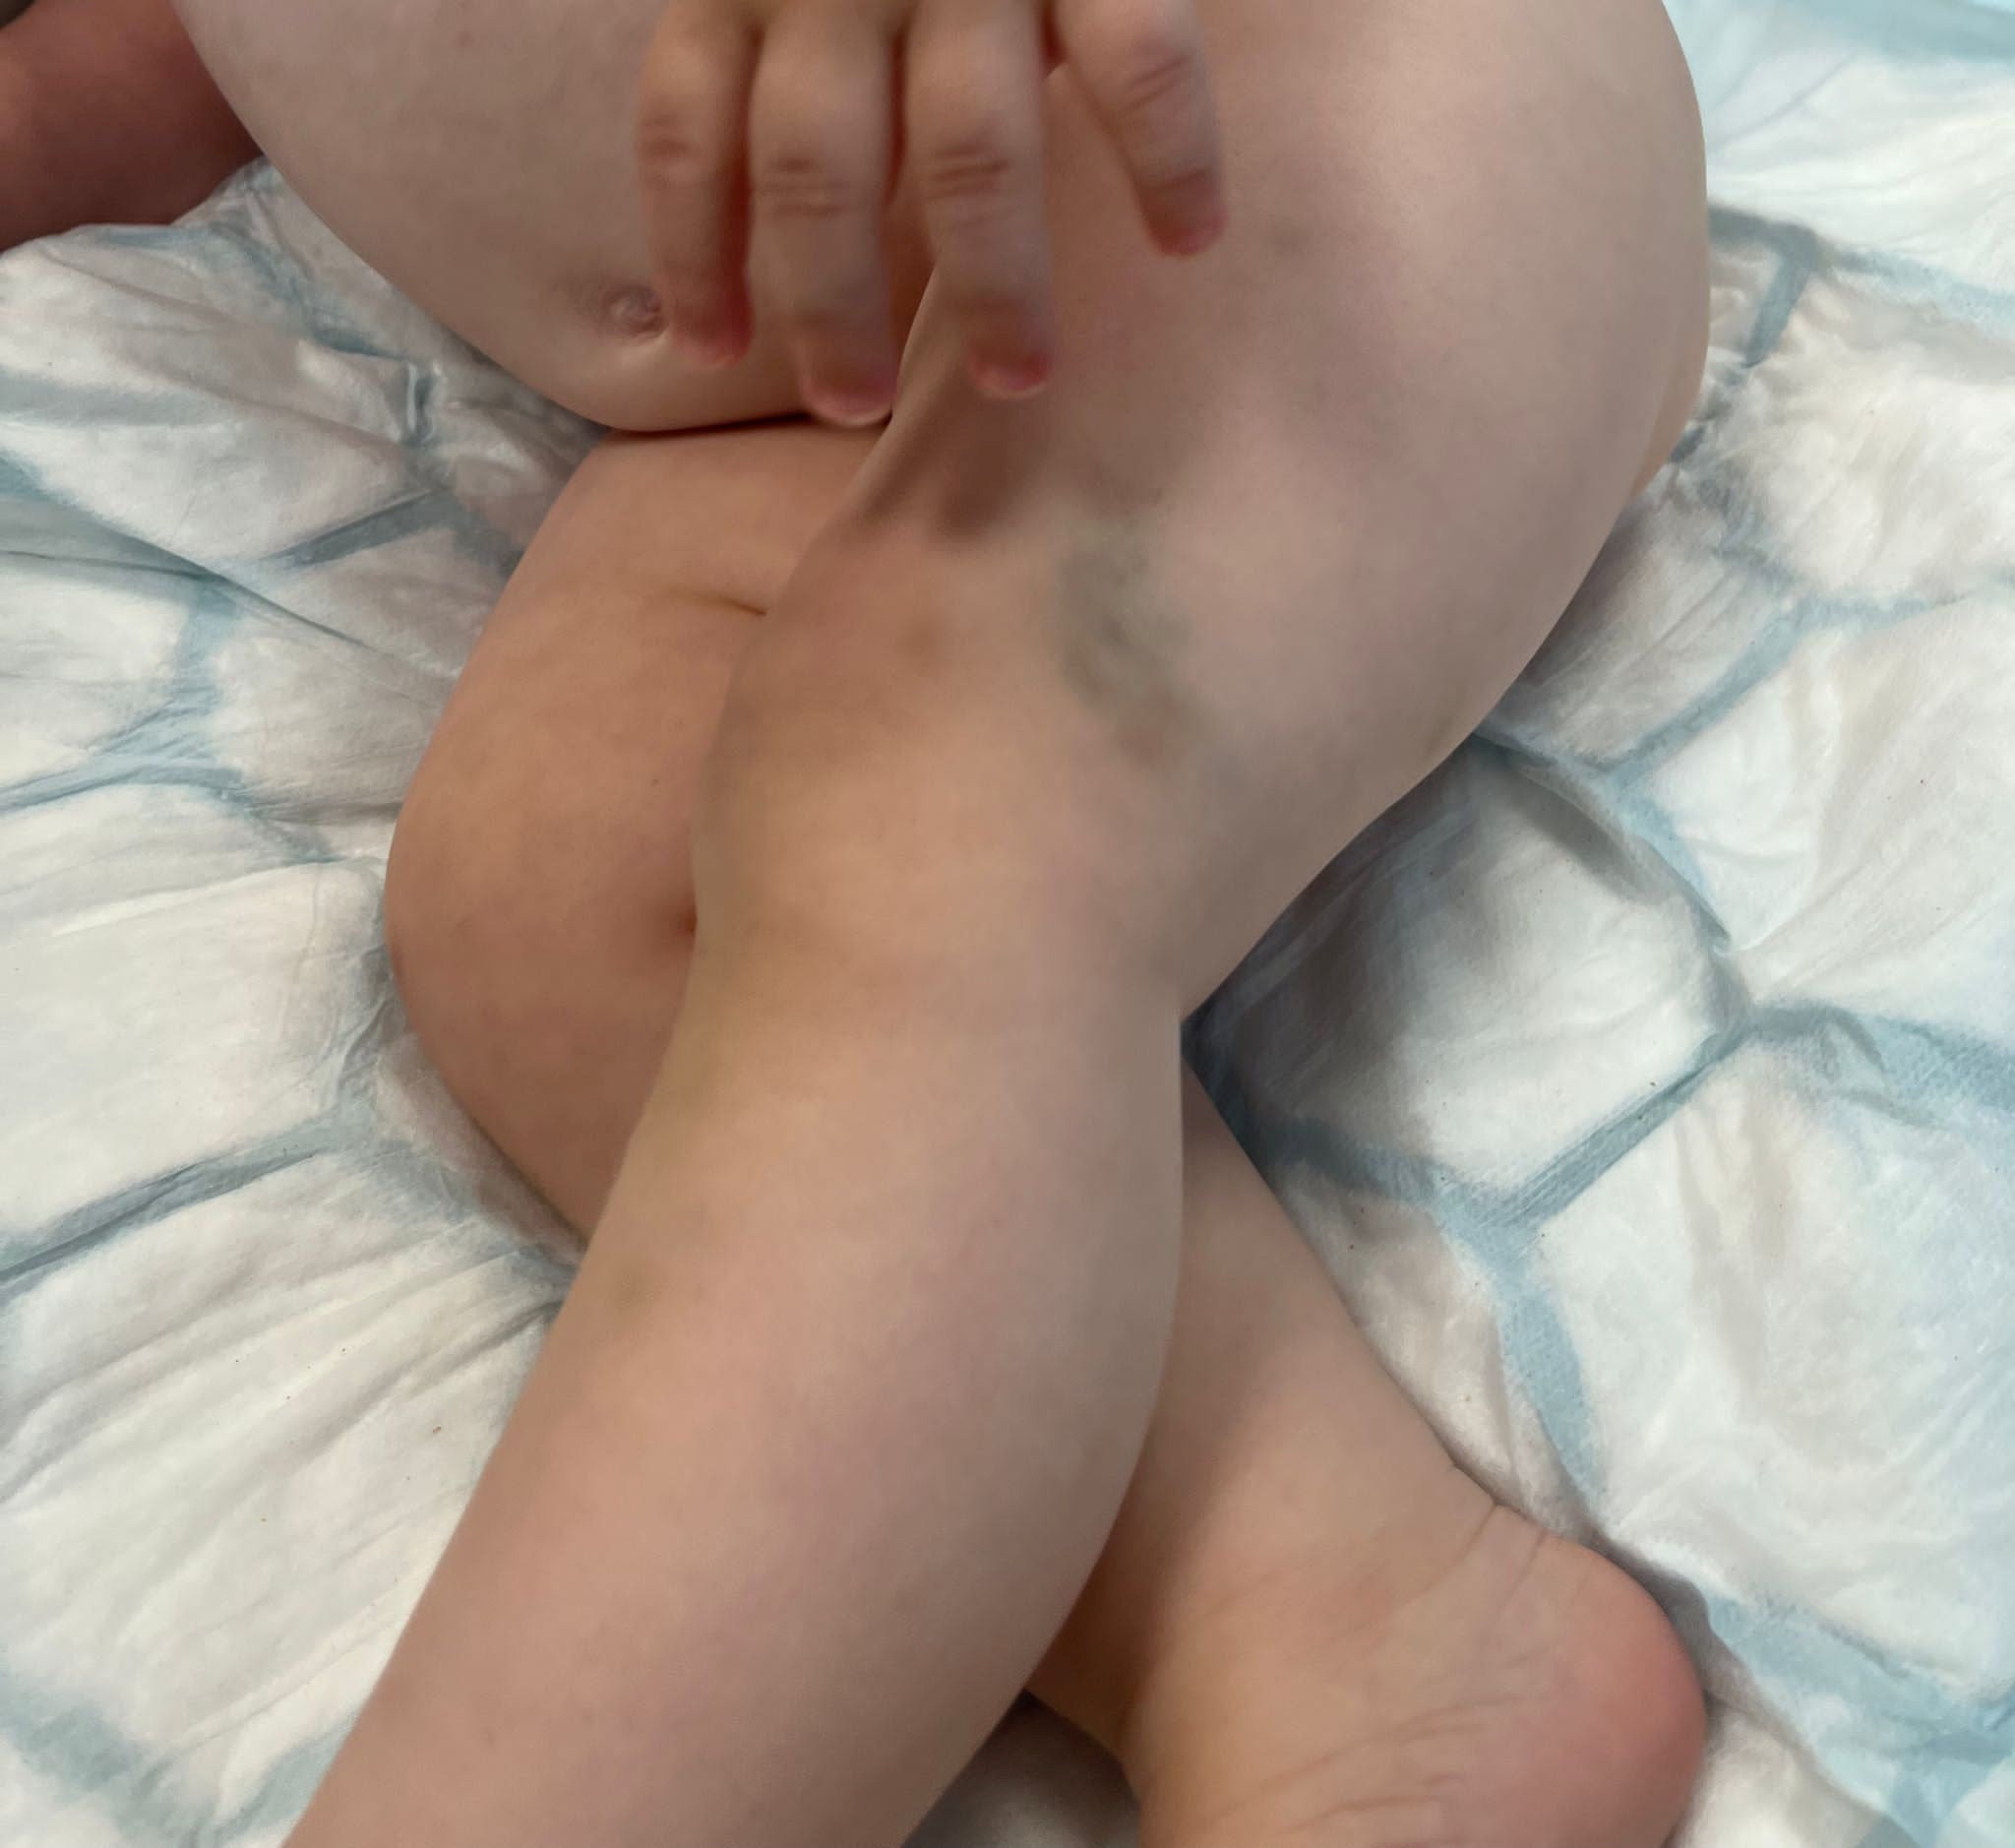 Mystery bruises on baby boy Bailey KilbaneÕs legs